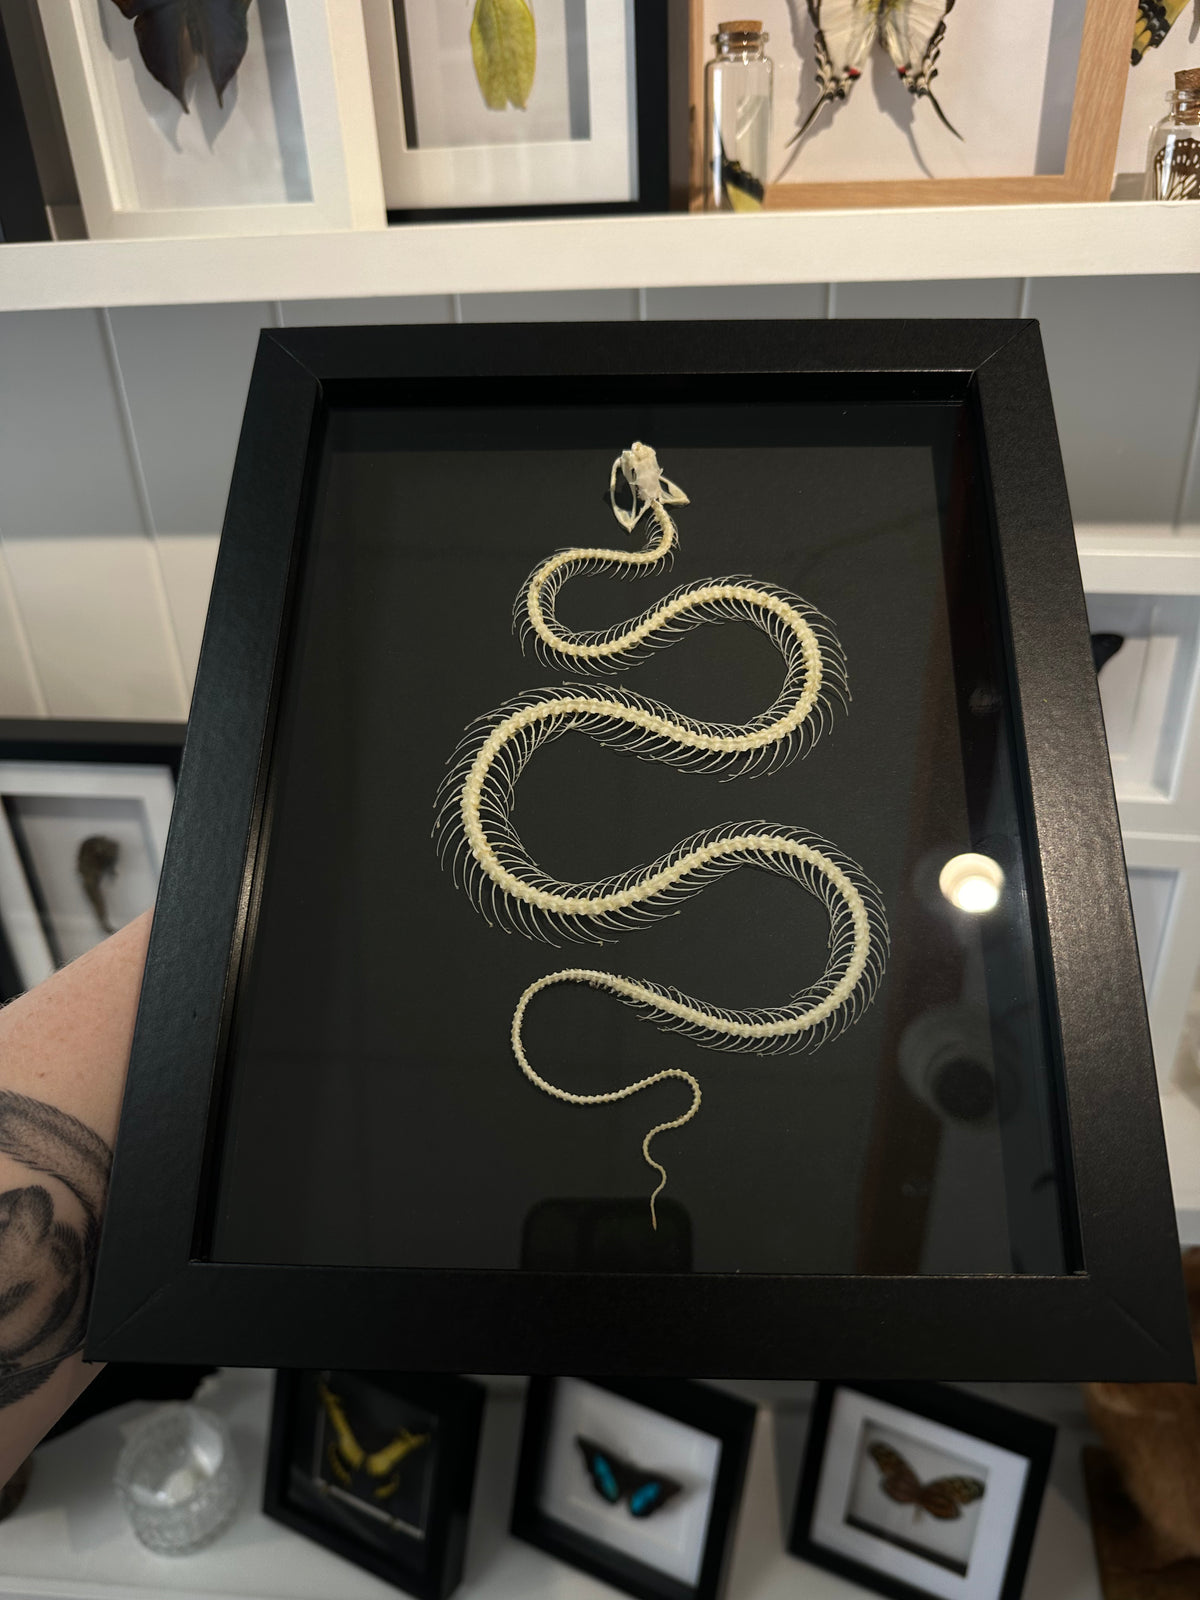 Snake Skeleton / White-Lipped Pit Viper in a frame #1